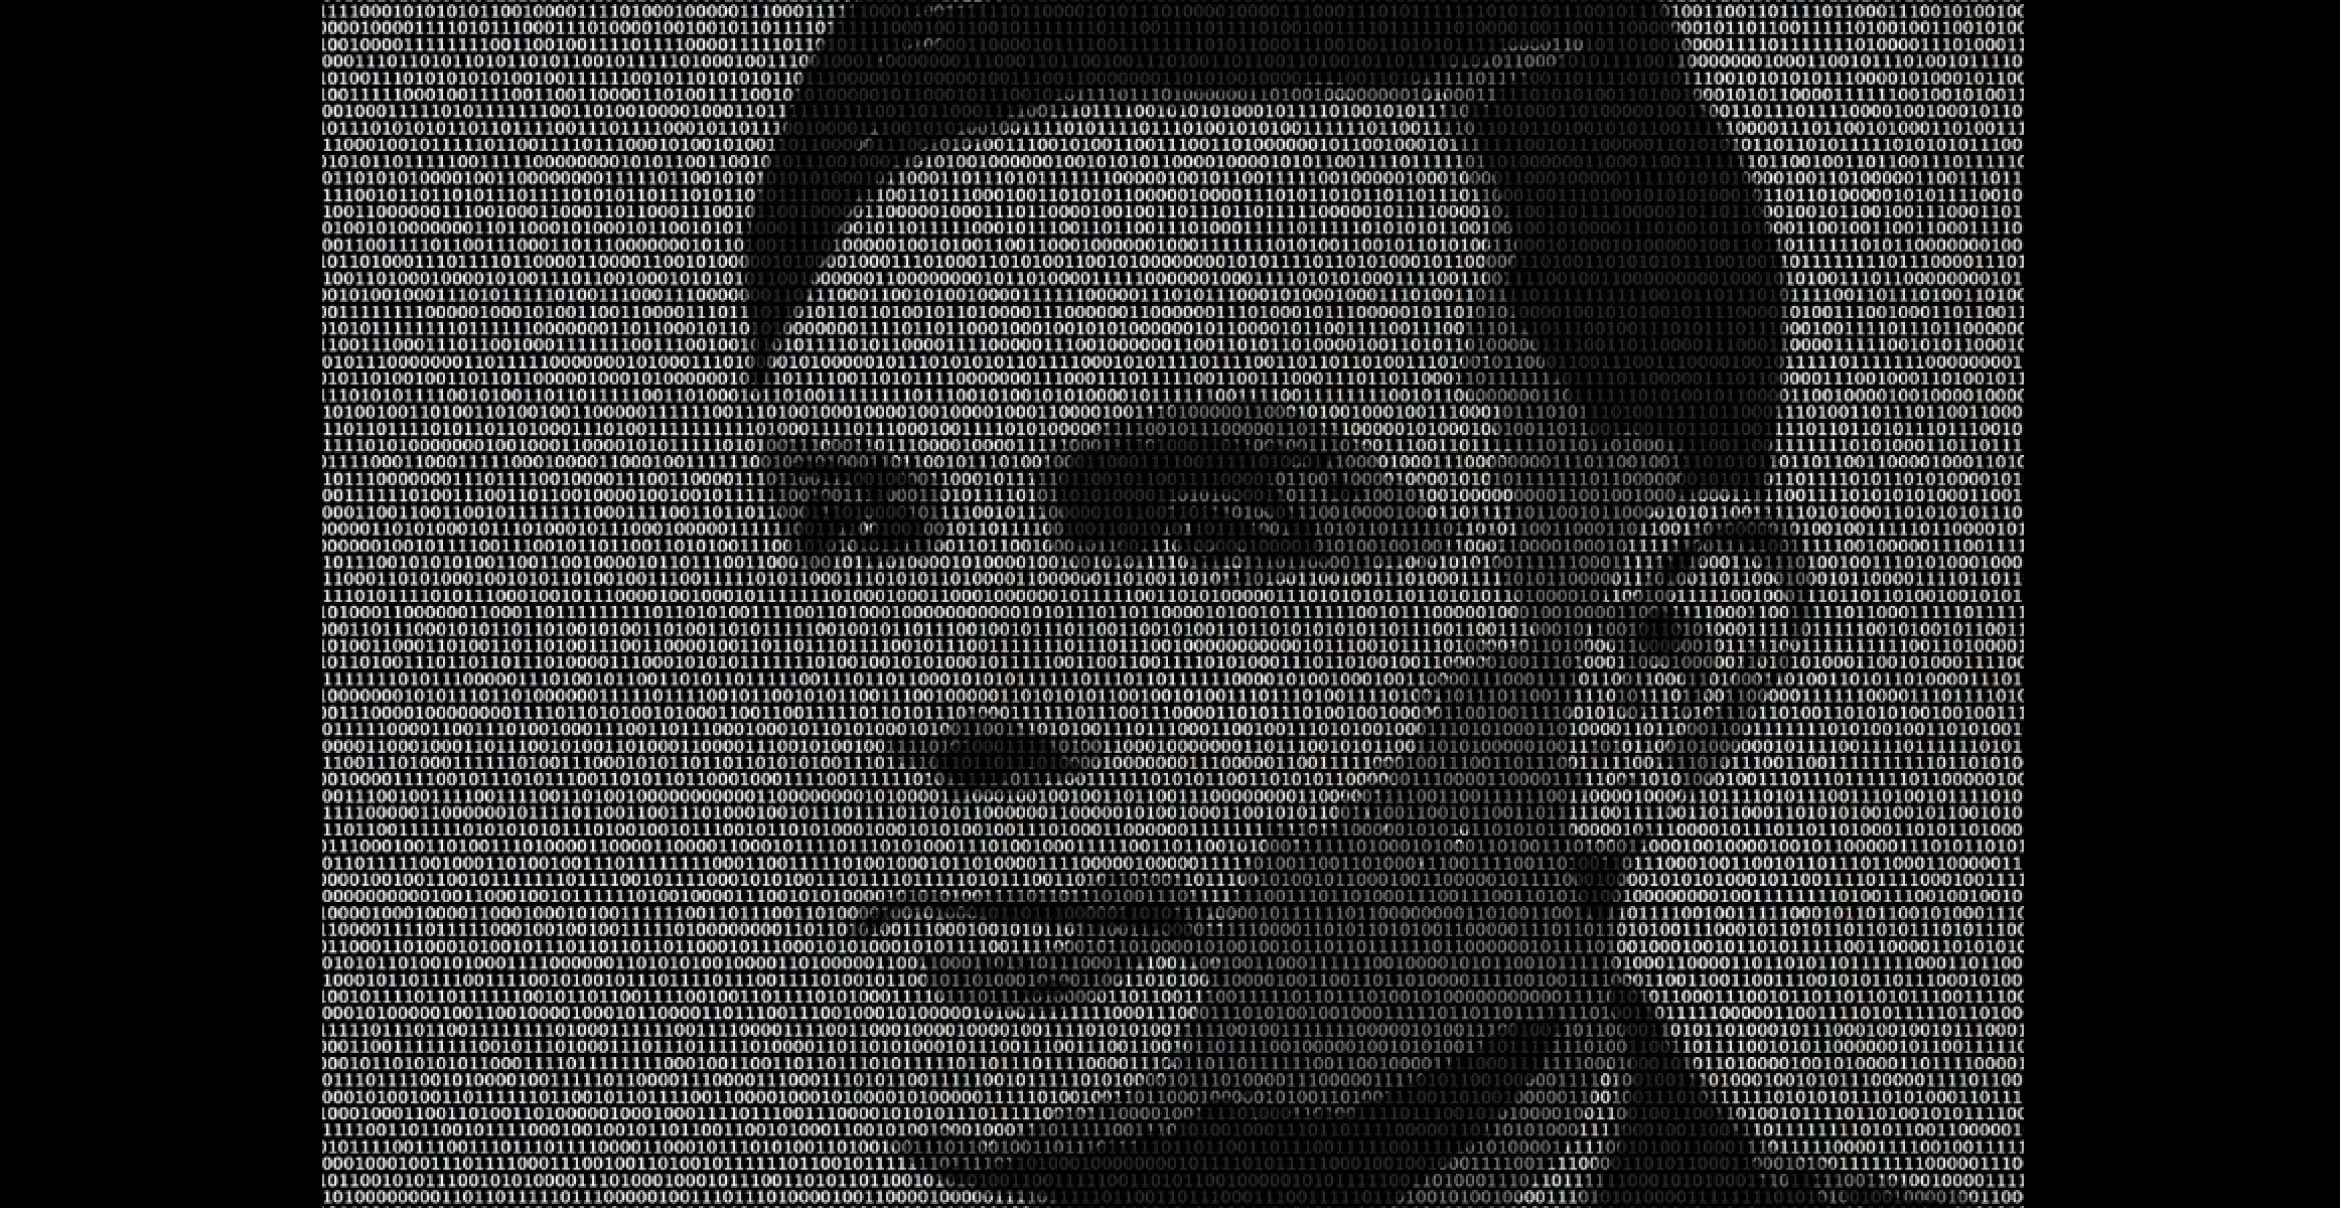 Alan Turing könnte 64 Jahre nach seinem Tod für bessere Krebsfürsorge sorgen